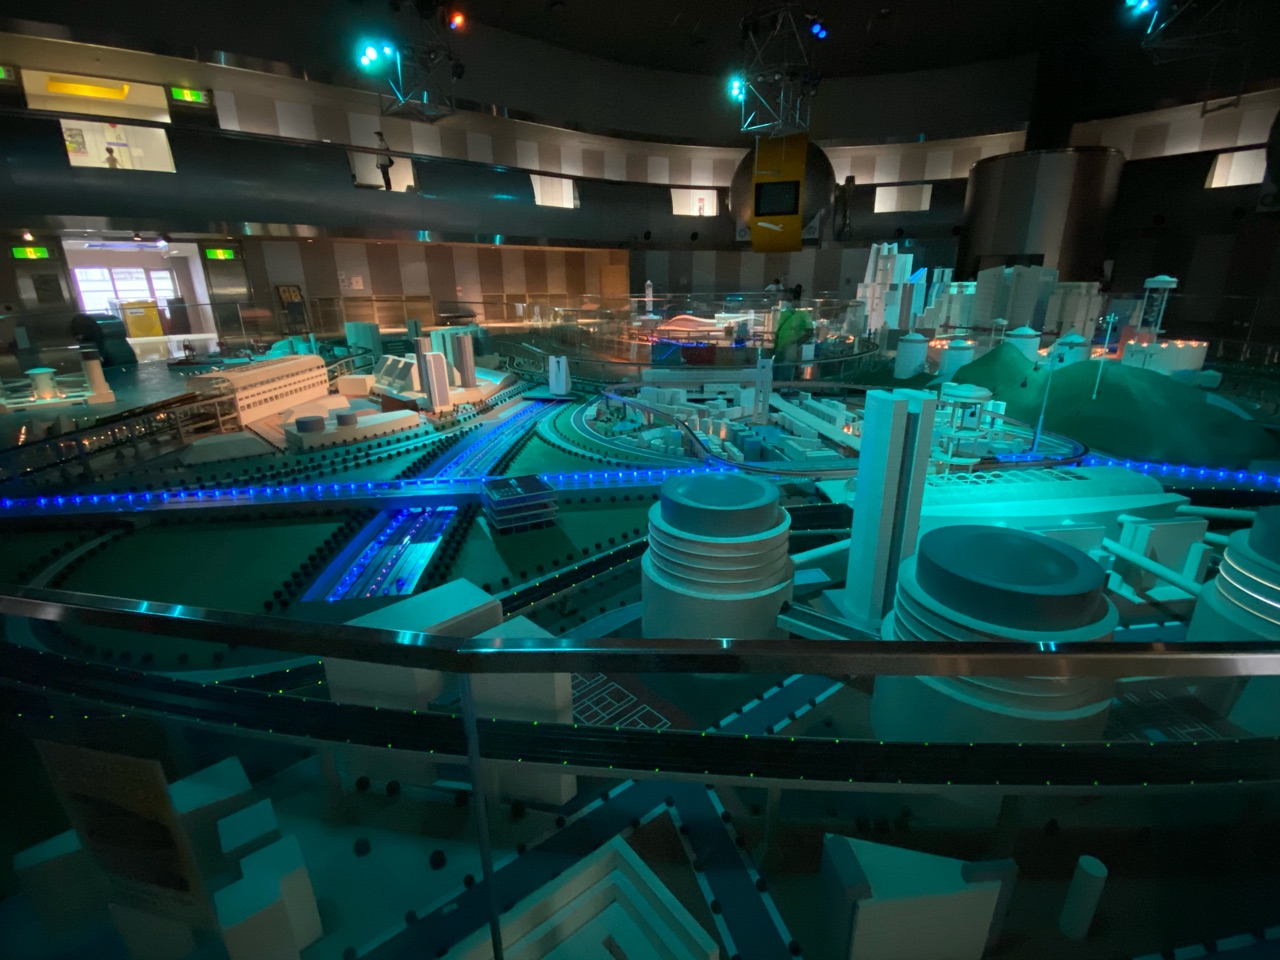 ヌマジ交通ミュージアム(広島市交通科学館)の超巨大パノラマ 夜景モード